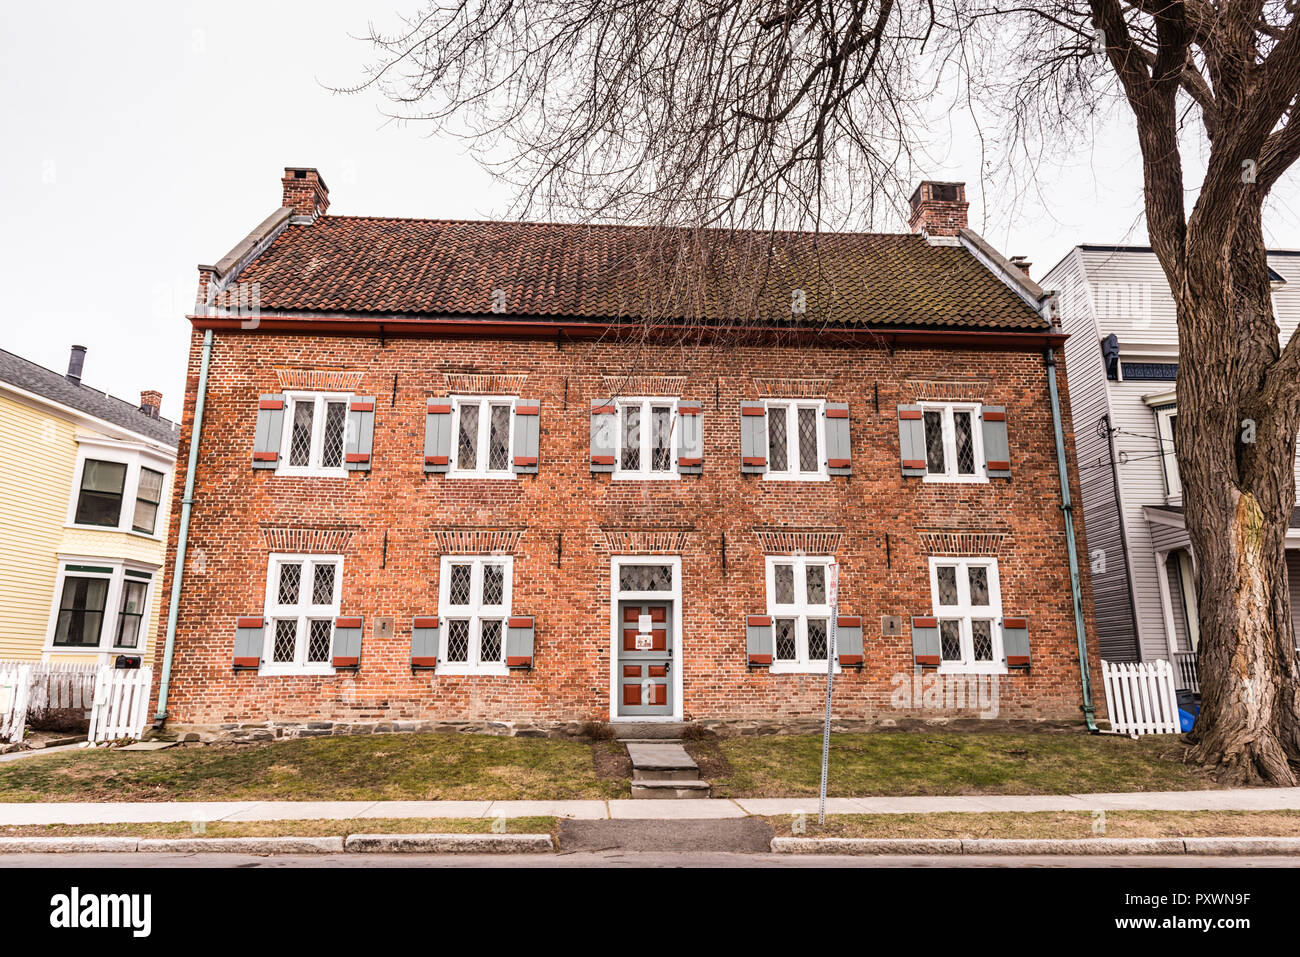 Musée interactif de l'histoire néerlandaise coloniale et culture dans un 18ème siècle maison en brique rouge. Banque D'Images